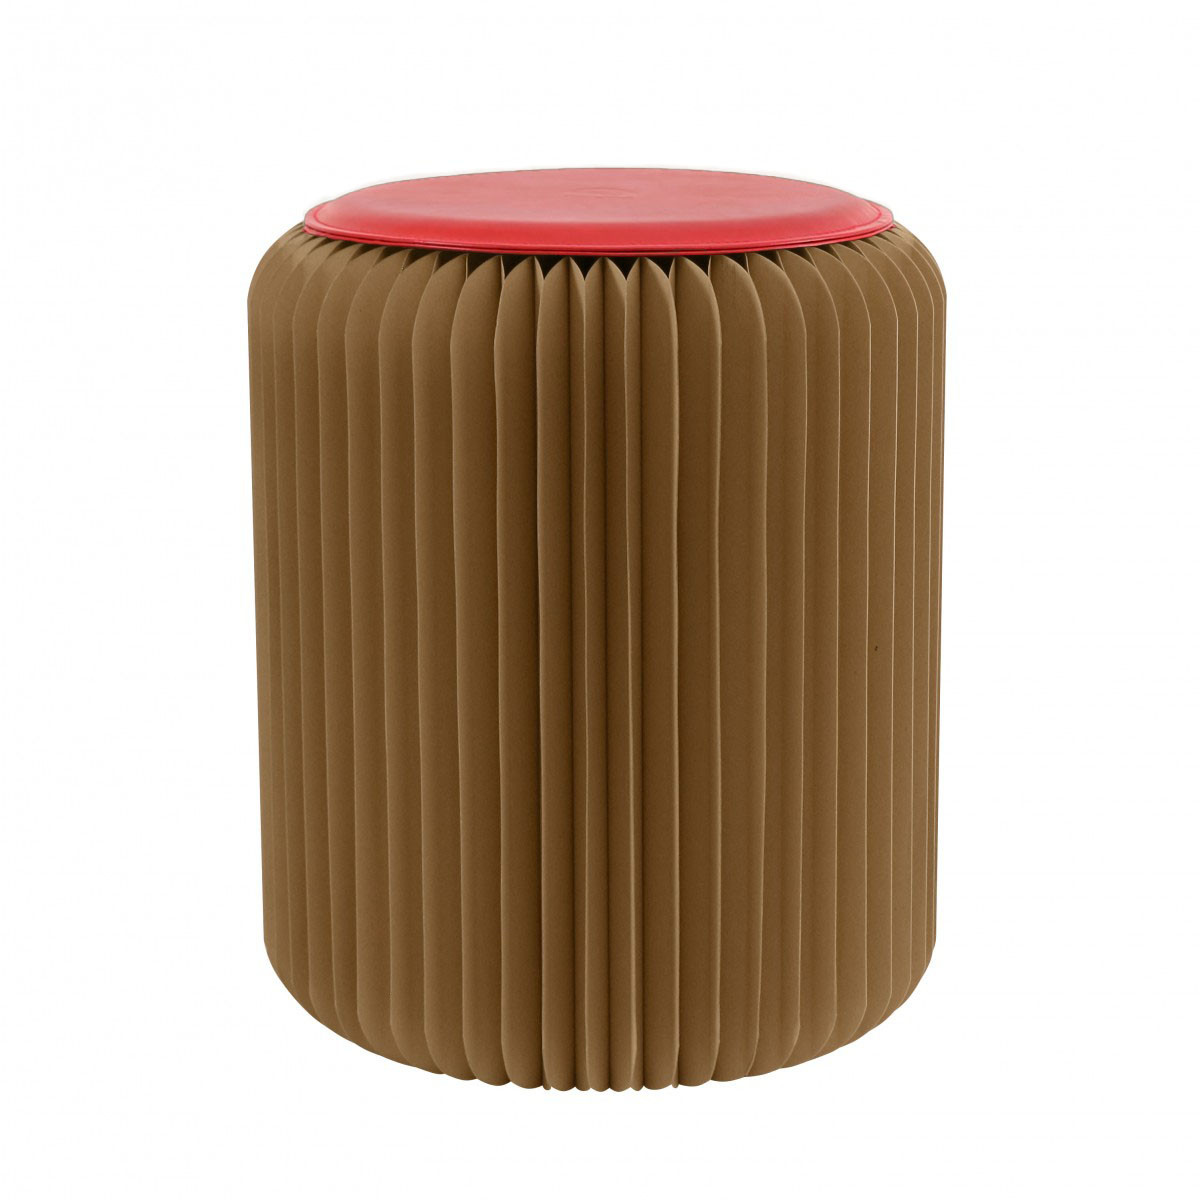 Tabouret pliable marron avec assise rouge